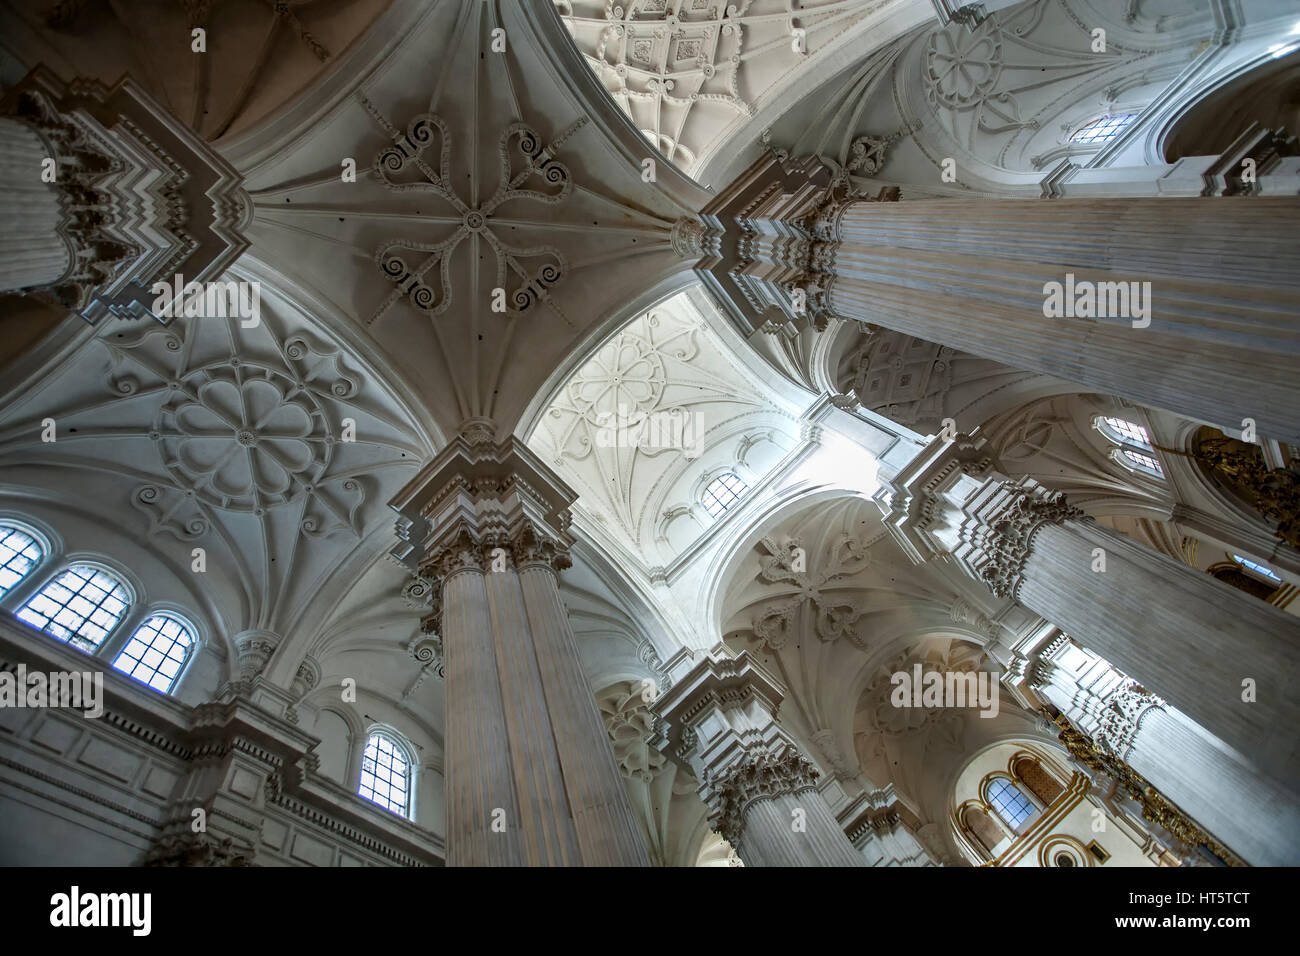 Colonnes et plafond, la Cathédrale de Grenade (Cathédrale de l'Incarnation), Granada, Espagne Banque D'Images